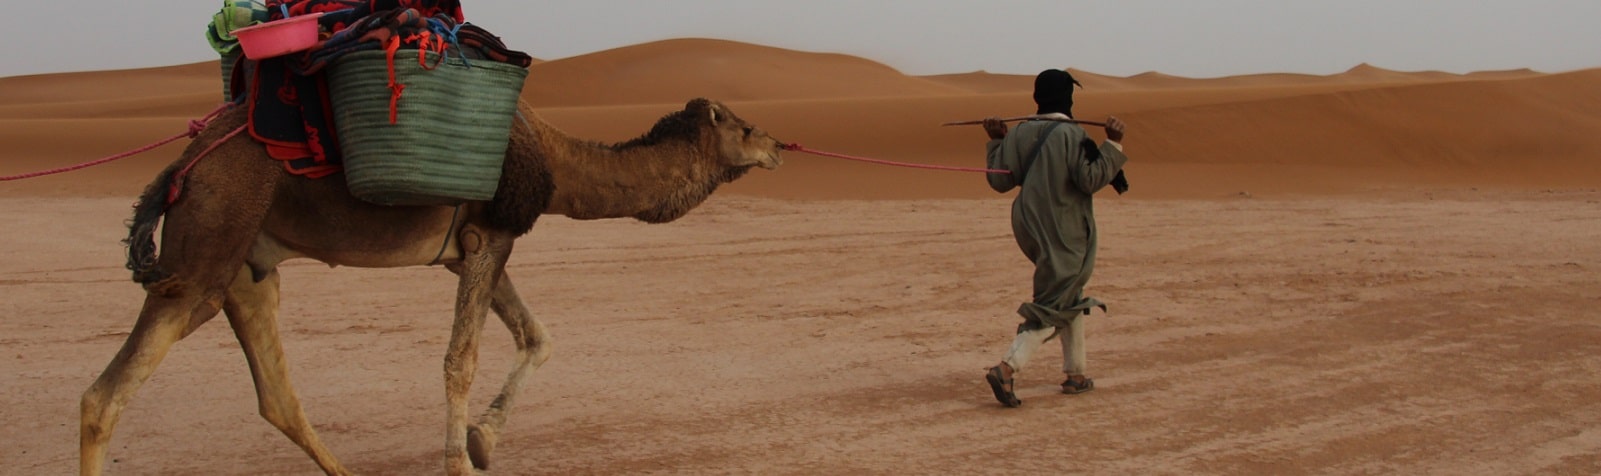 Morocco desert trek